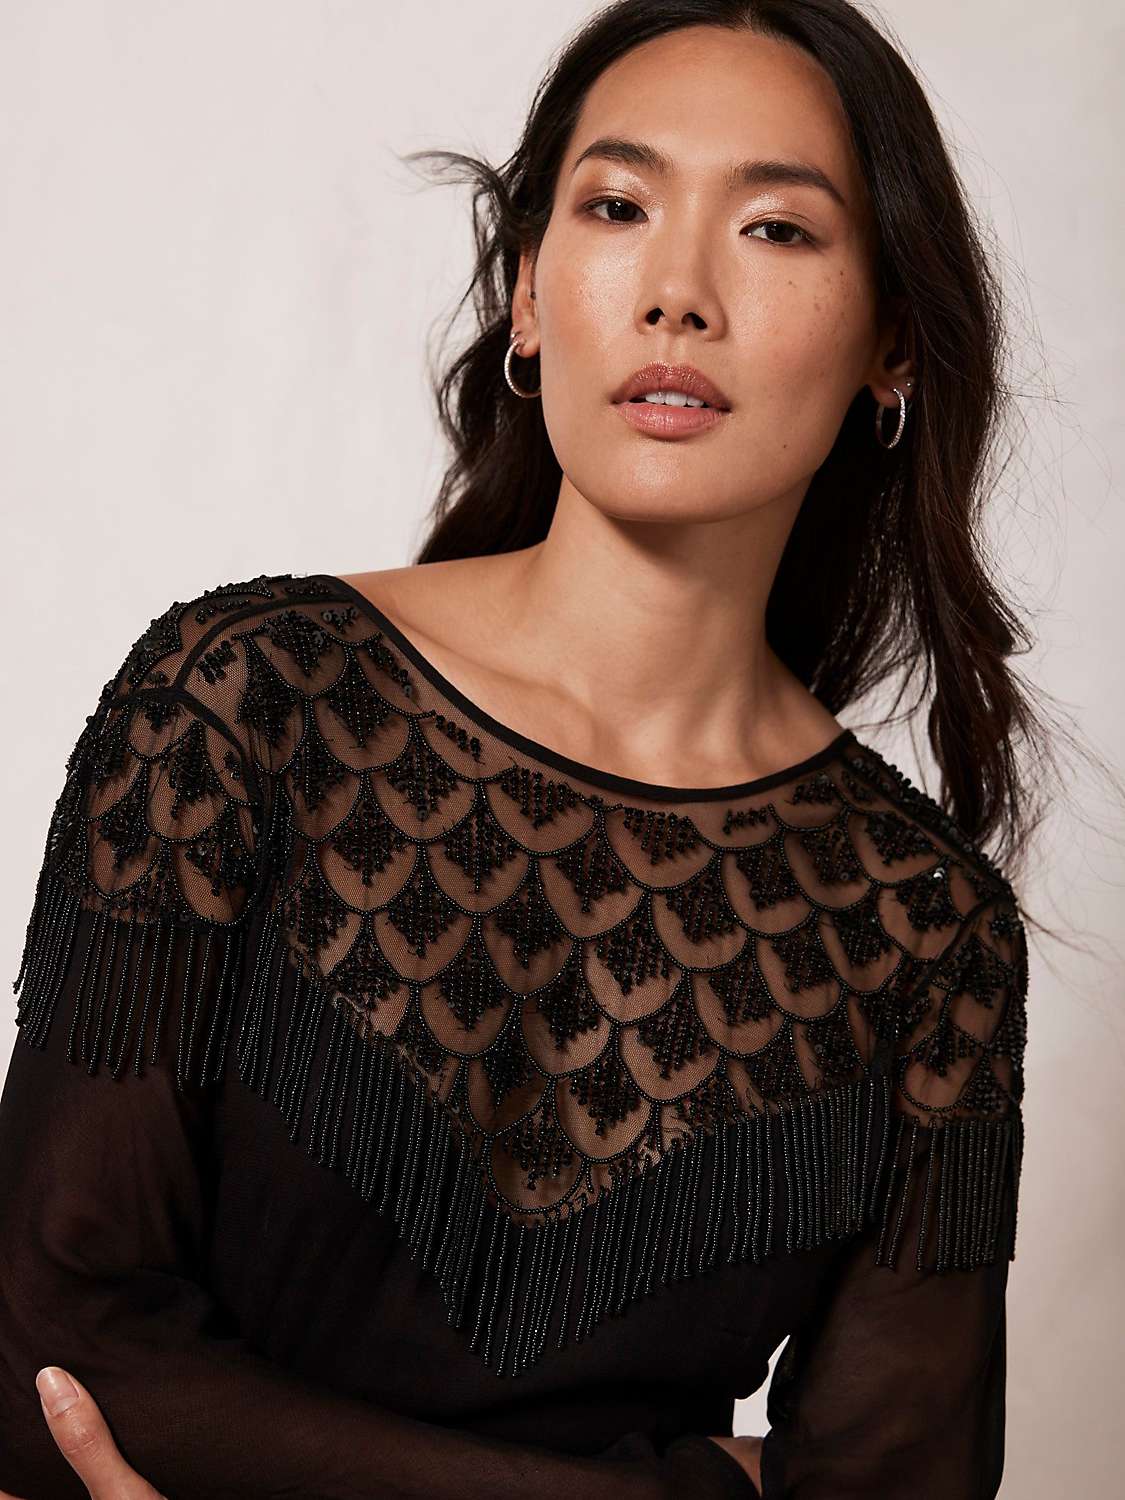 Buy Mint Velvet Beaded Sheer Midi Dress, Black Online at johnlewis.com